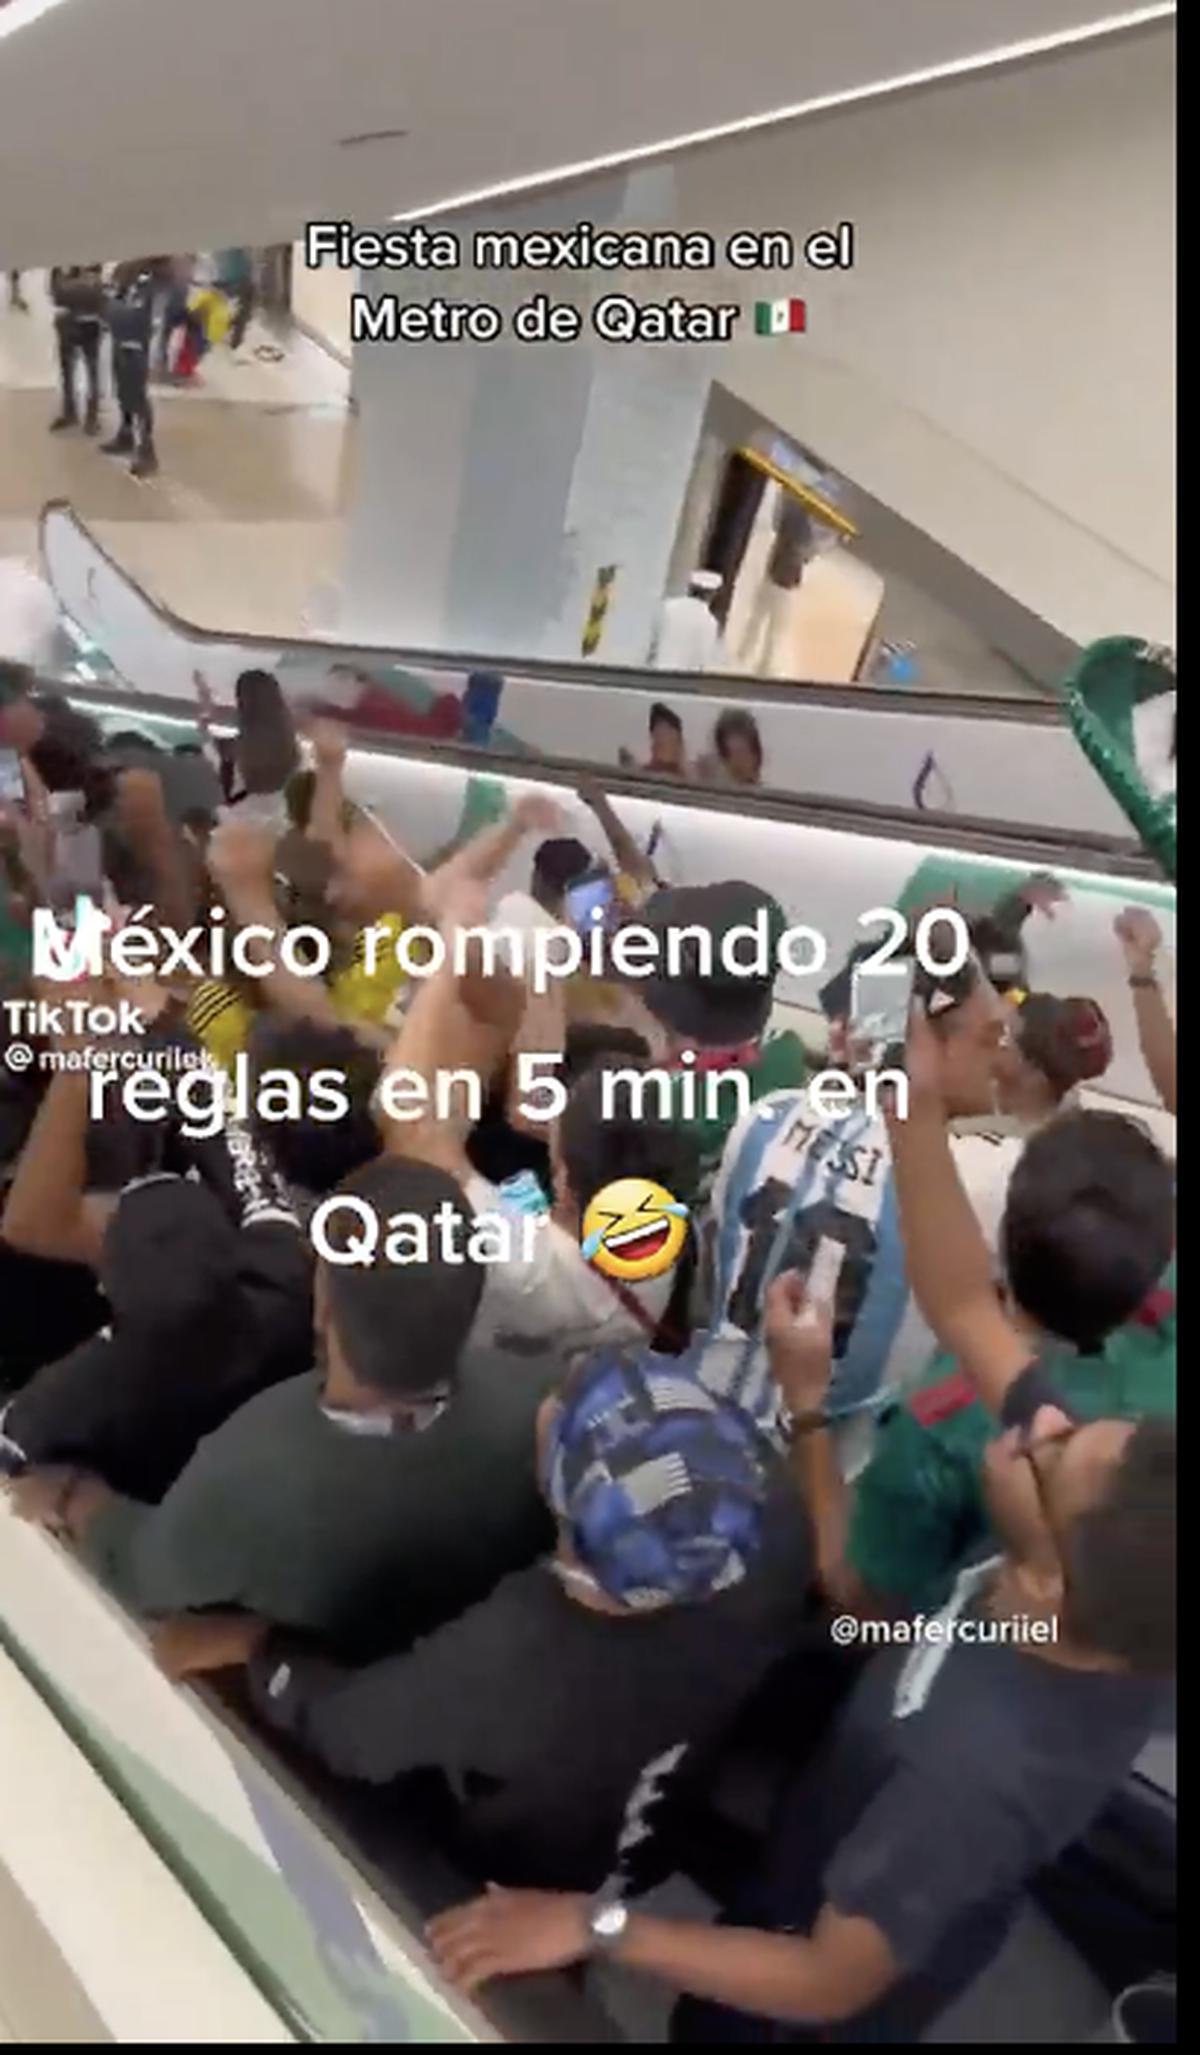  | Los mexicanos en el metro de Qatar, haciendo fiesta mexicana. Foto: @franciaalcaraz/TikTok